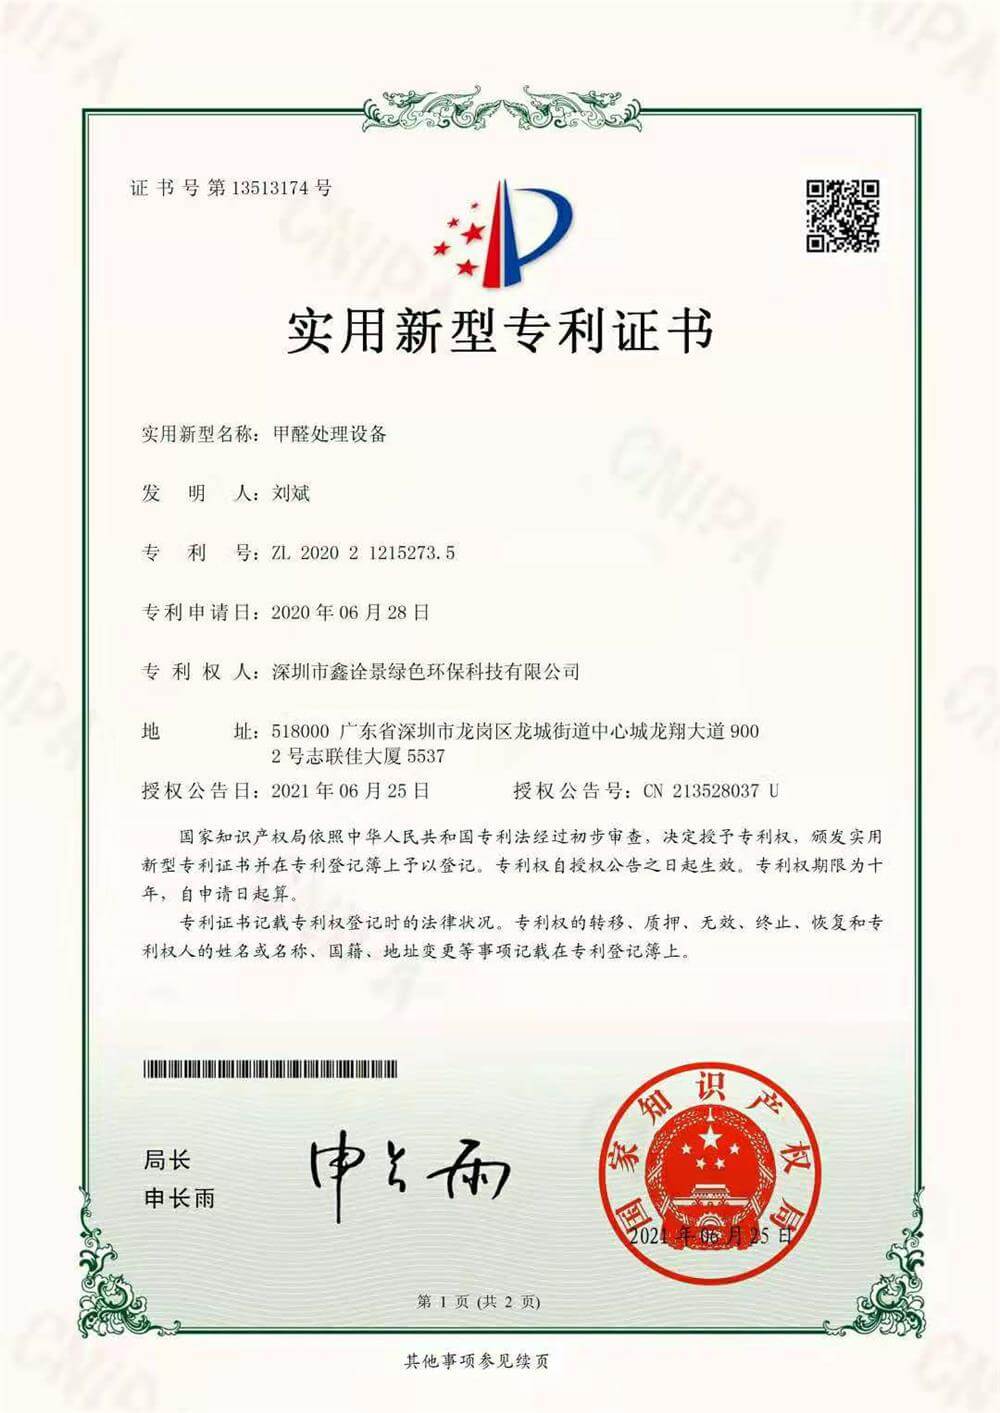 甲醛处理设备专利证书